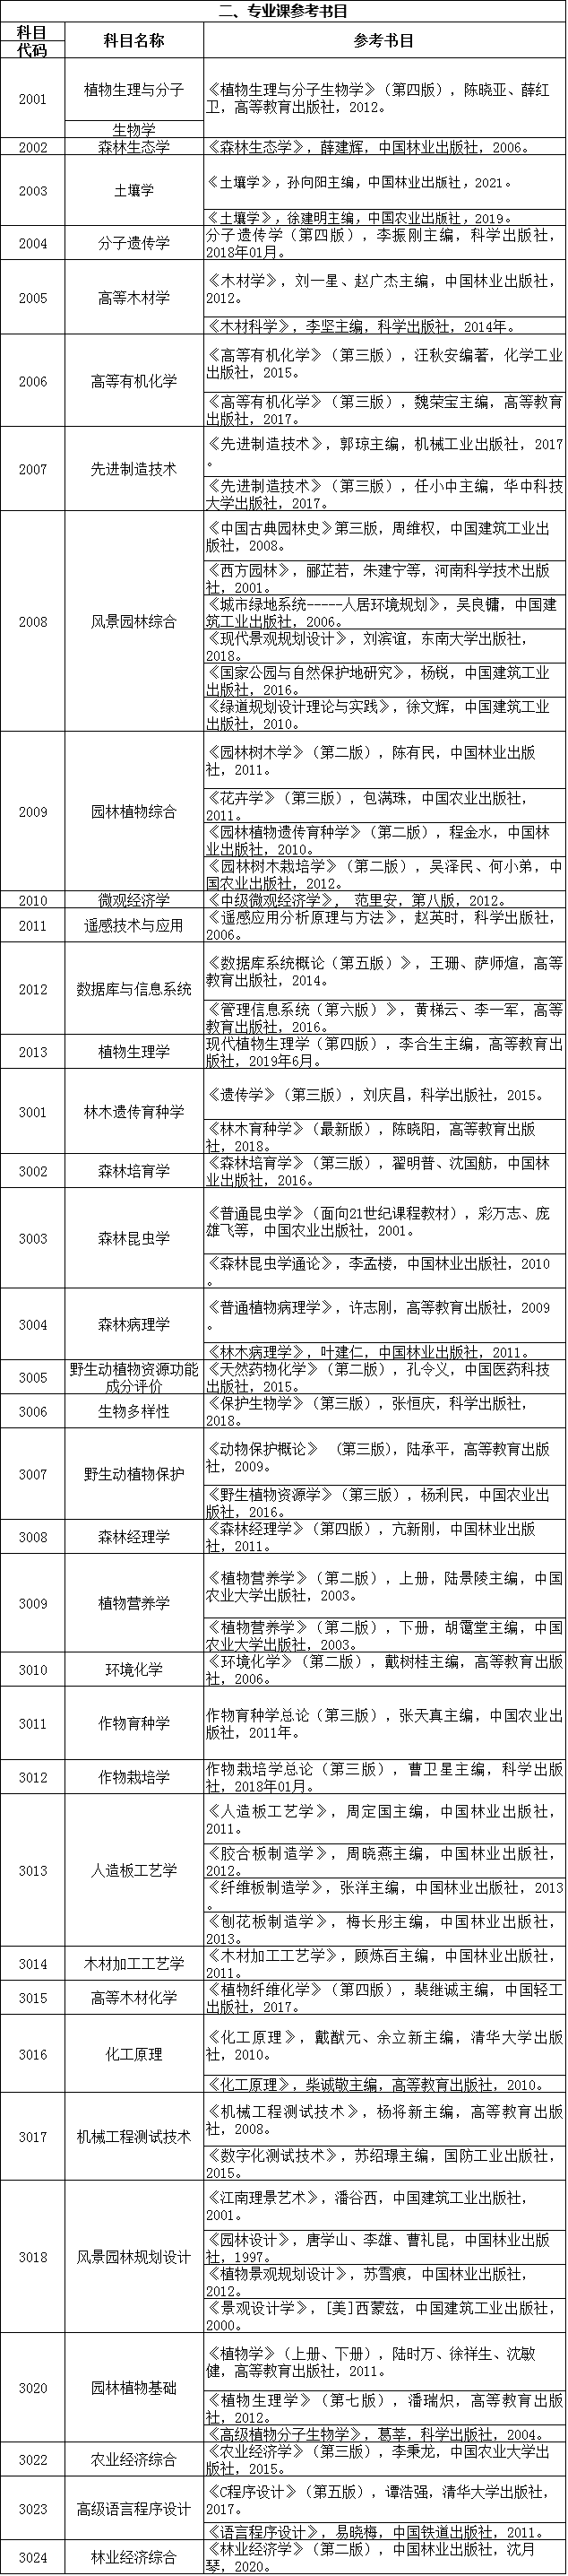 浙江农林大学2022年博士研究生招生考试参考书目